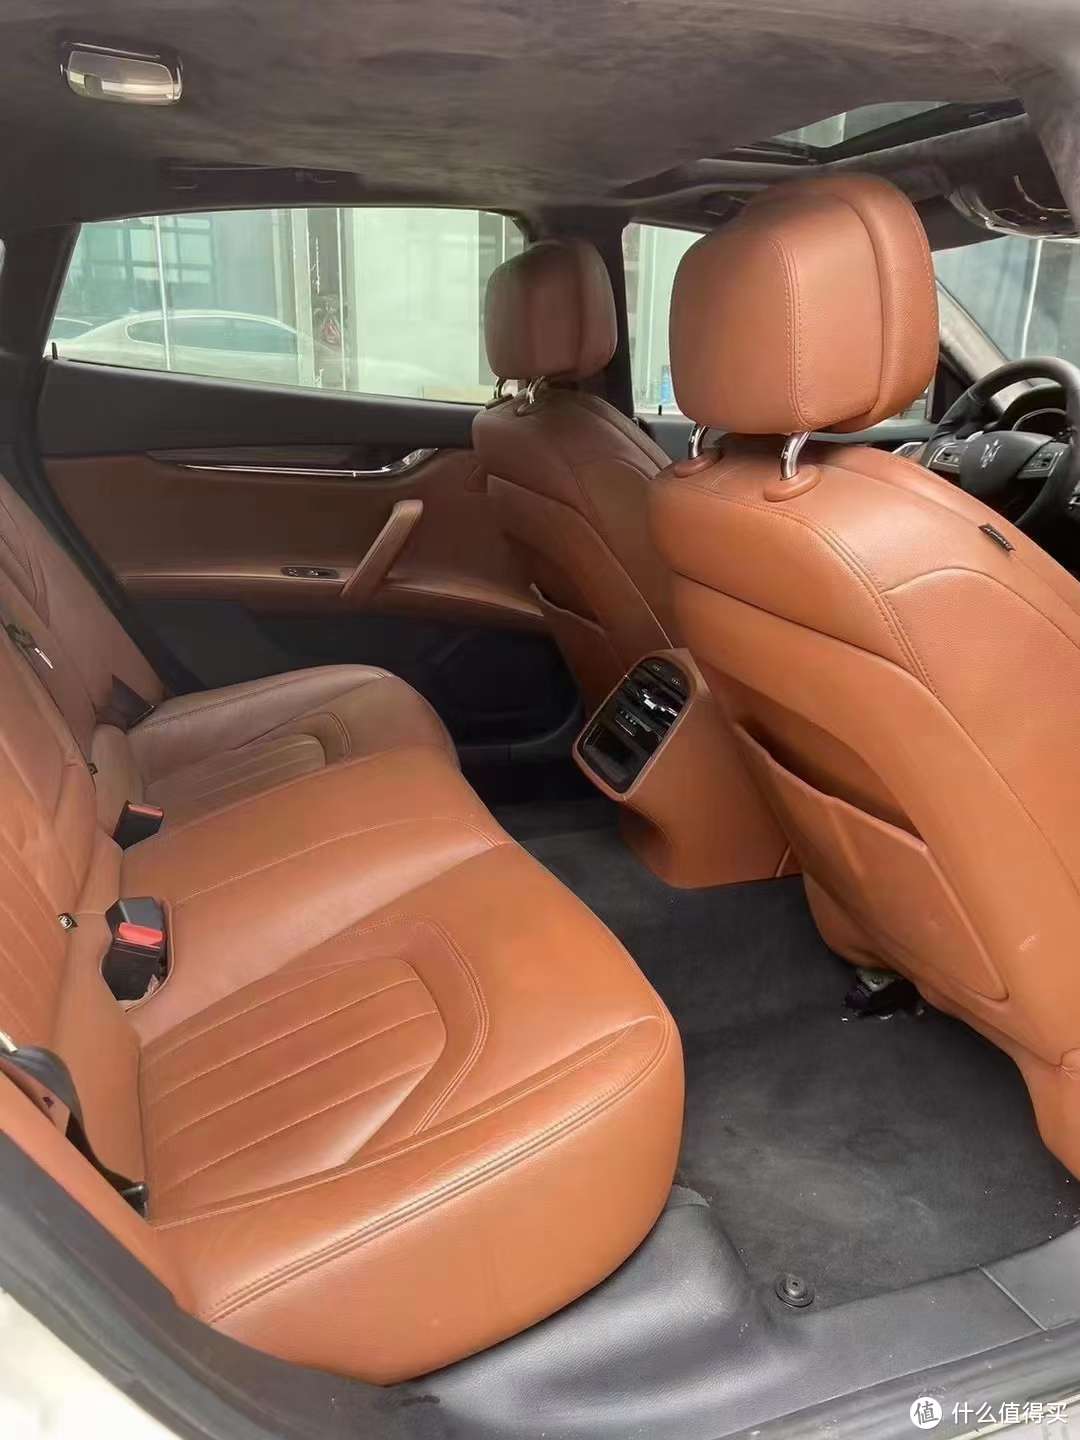 玛莎拉蒂莱万特（Maserati Levante）是一款豪华SUV，下面是关于其内饰设计的一些特点